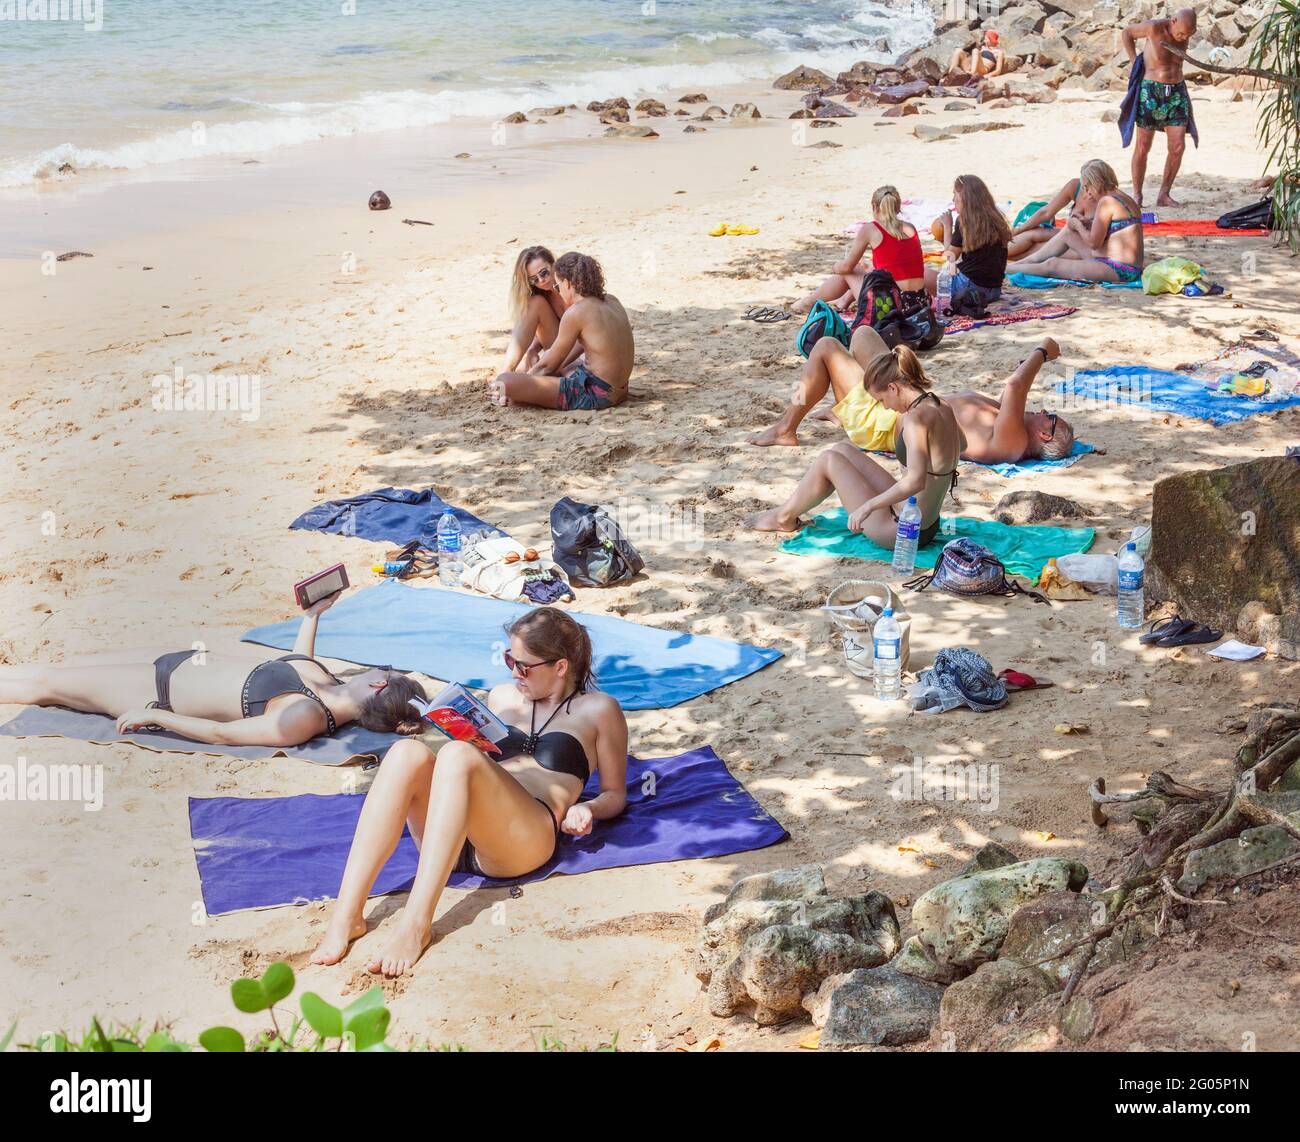 Western tourists wearing bikinis sunbathing and relaxing on white sand beach, Jungle Beach, Unawatuna, Southern province, Sri Lanka Stock Photo